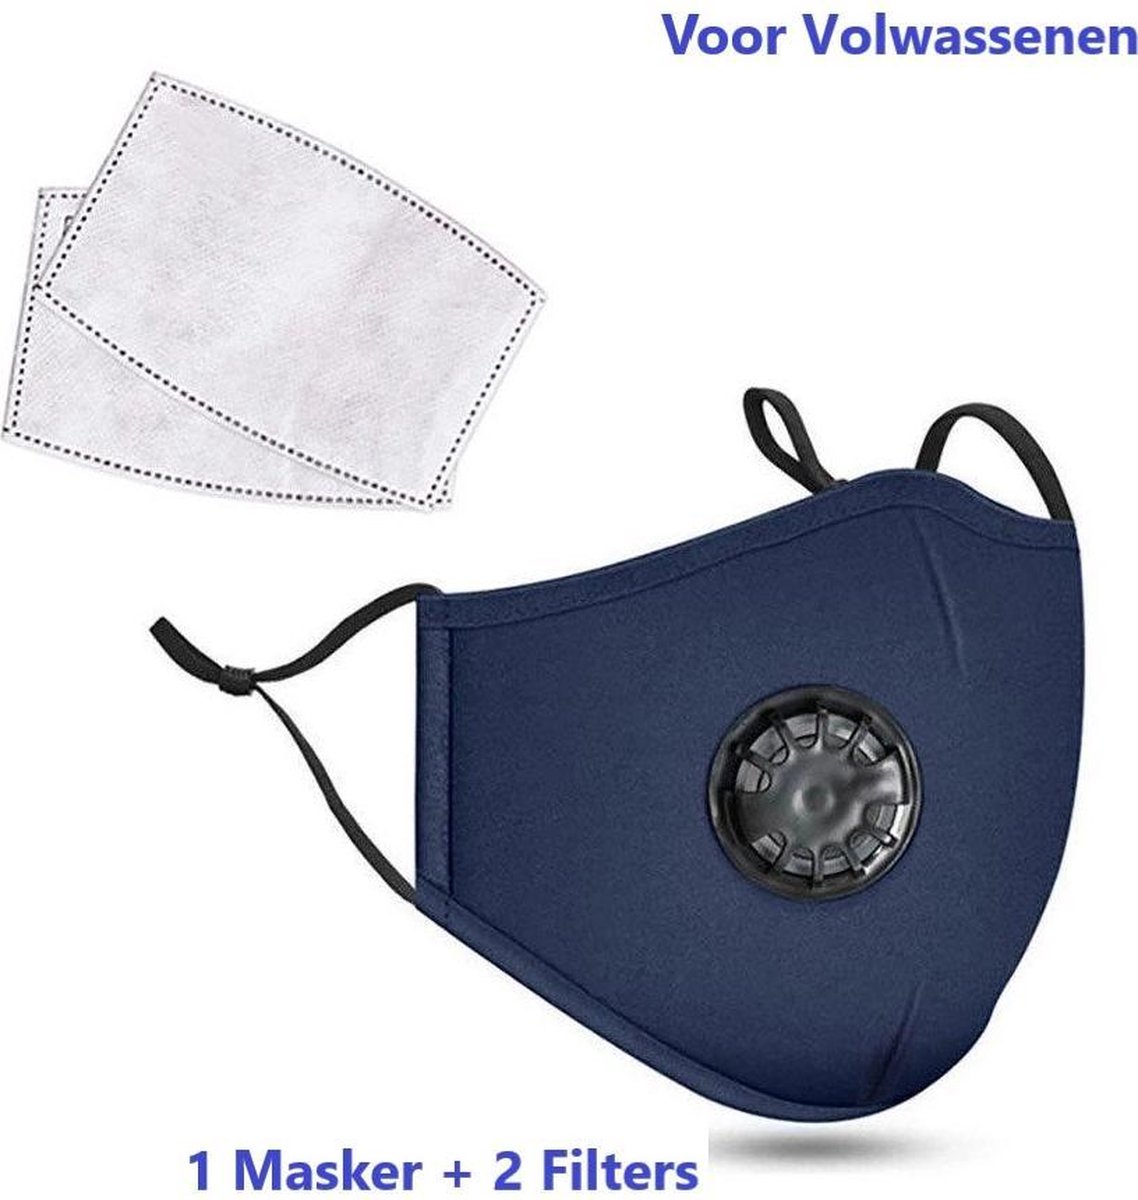 Mondkapje - Mondkapje met ademhalings filter - Donker Blauw - Navy - Wasbaar - Herbruikbaar - Adembescherming - 2 Gratis Filters - Merkloos